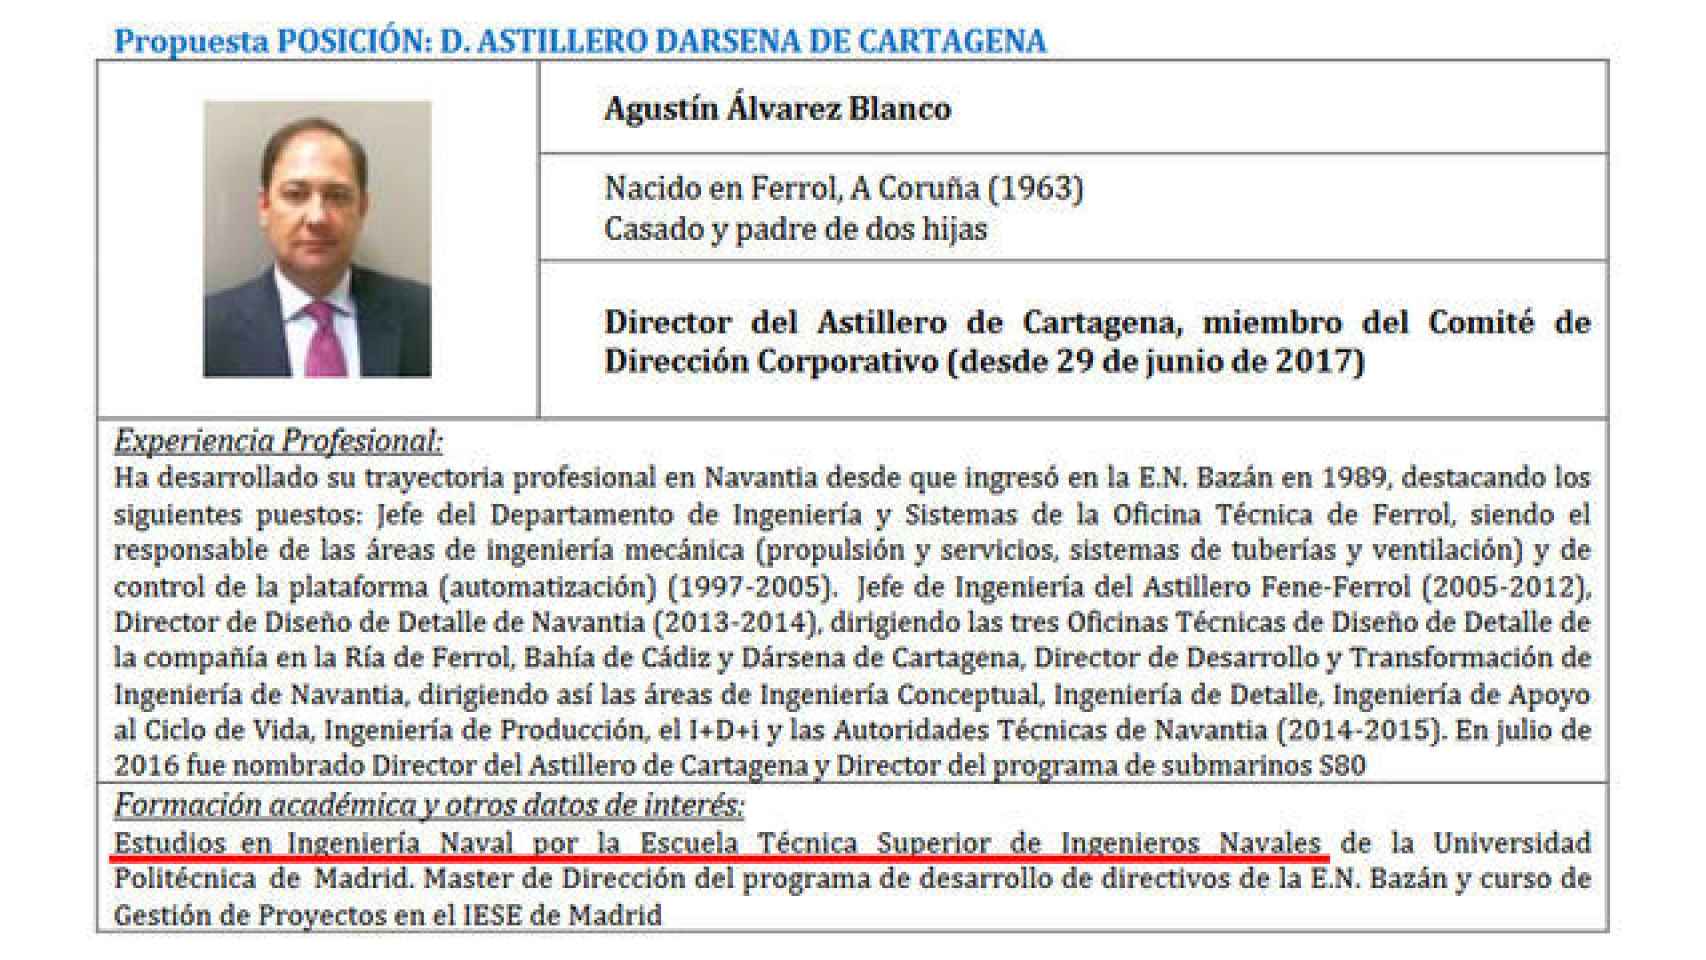 La modificación del currículo académico del director del astillero de Cartagena.